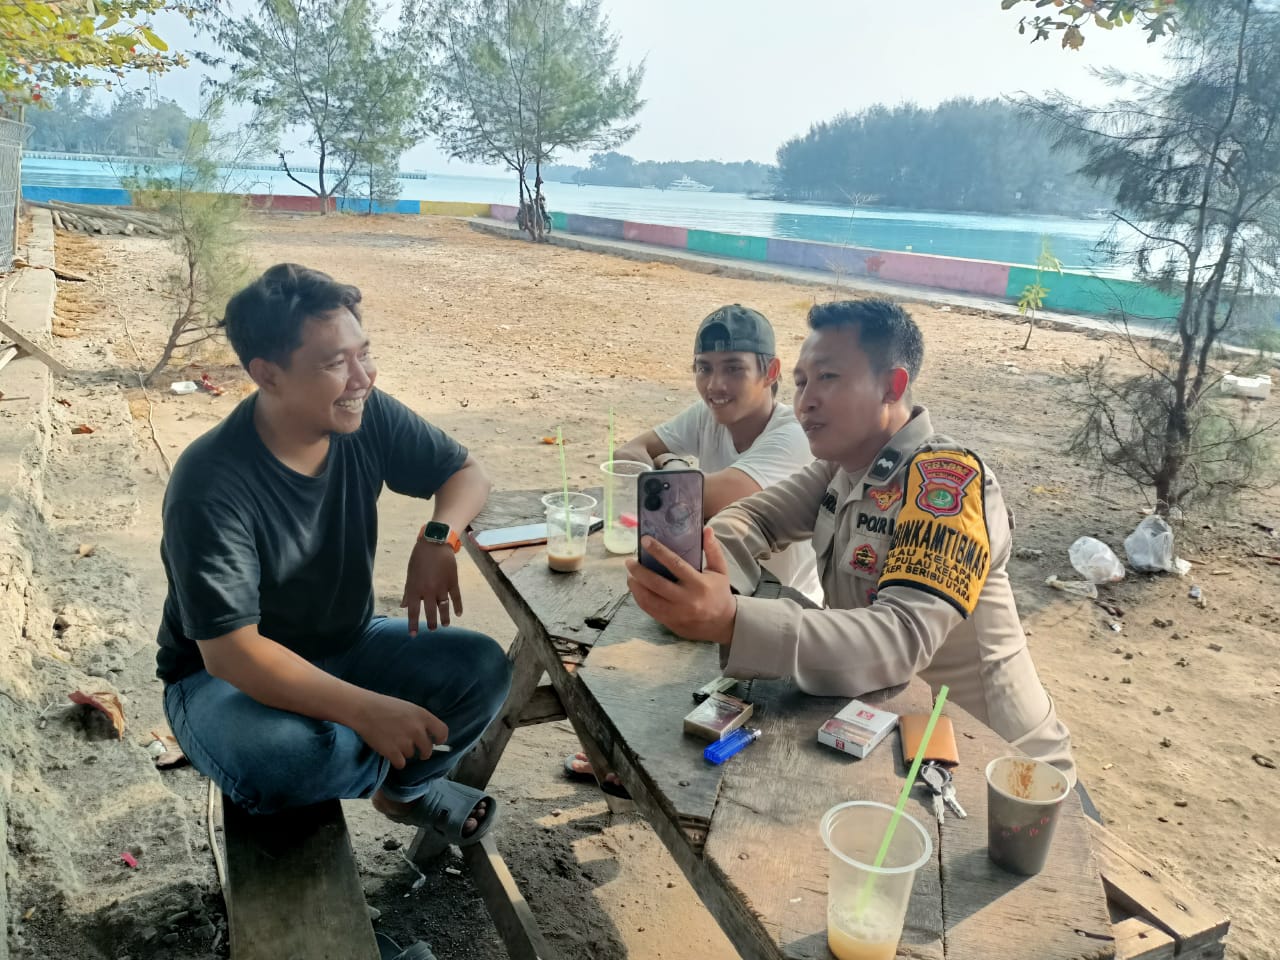 Bhabinkamtibmas Pulau Kelapa Sosialisasikan Hotline Polri 110: Ajak Warga Saling Jaga Keamanan dan Ketertiban